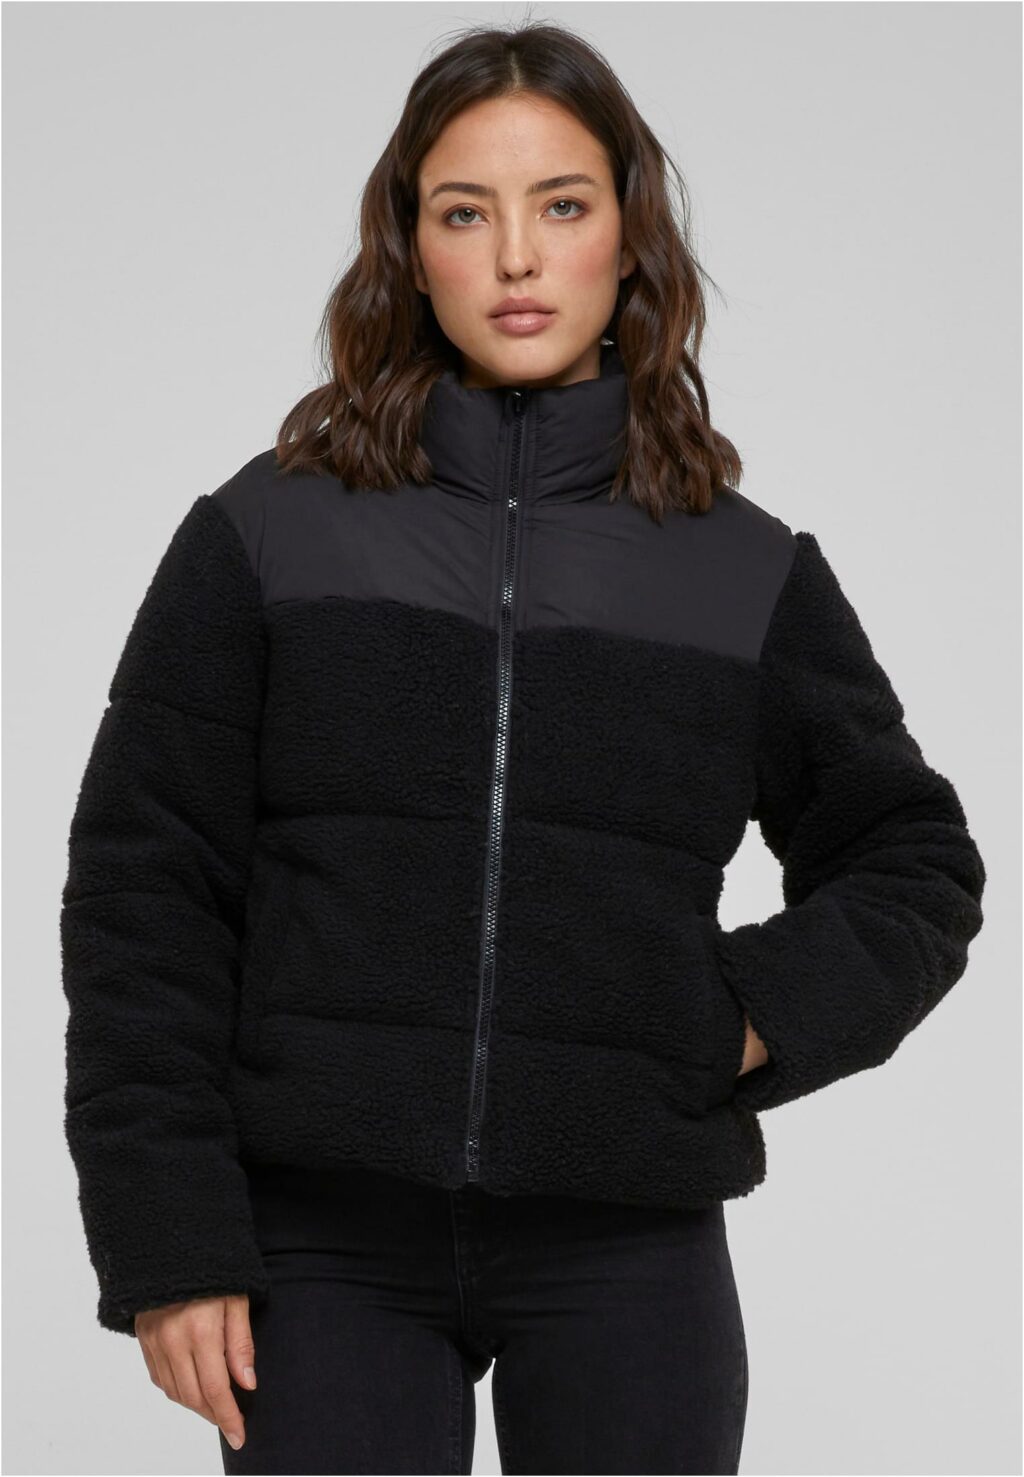 Urban Classics Ladies Short Sherpa Mix Puffer Jacket black/black TB6147